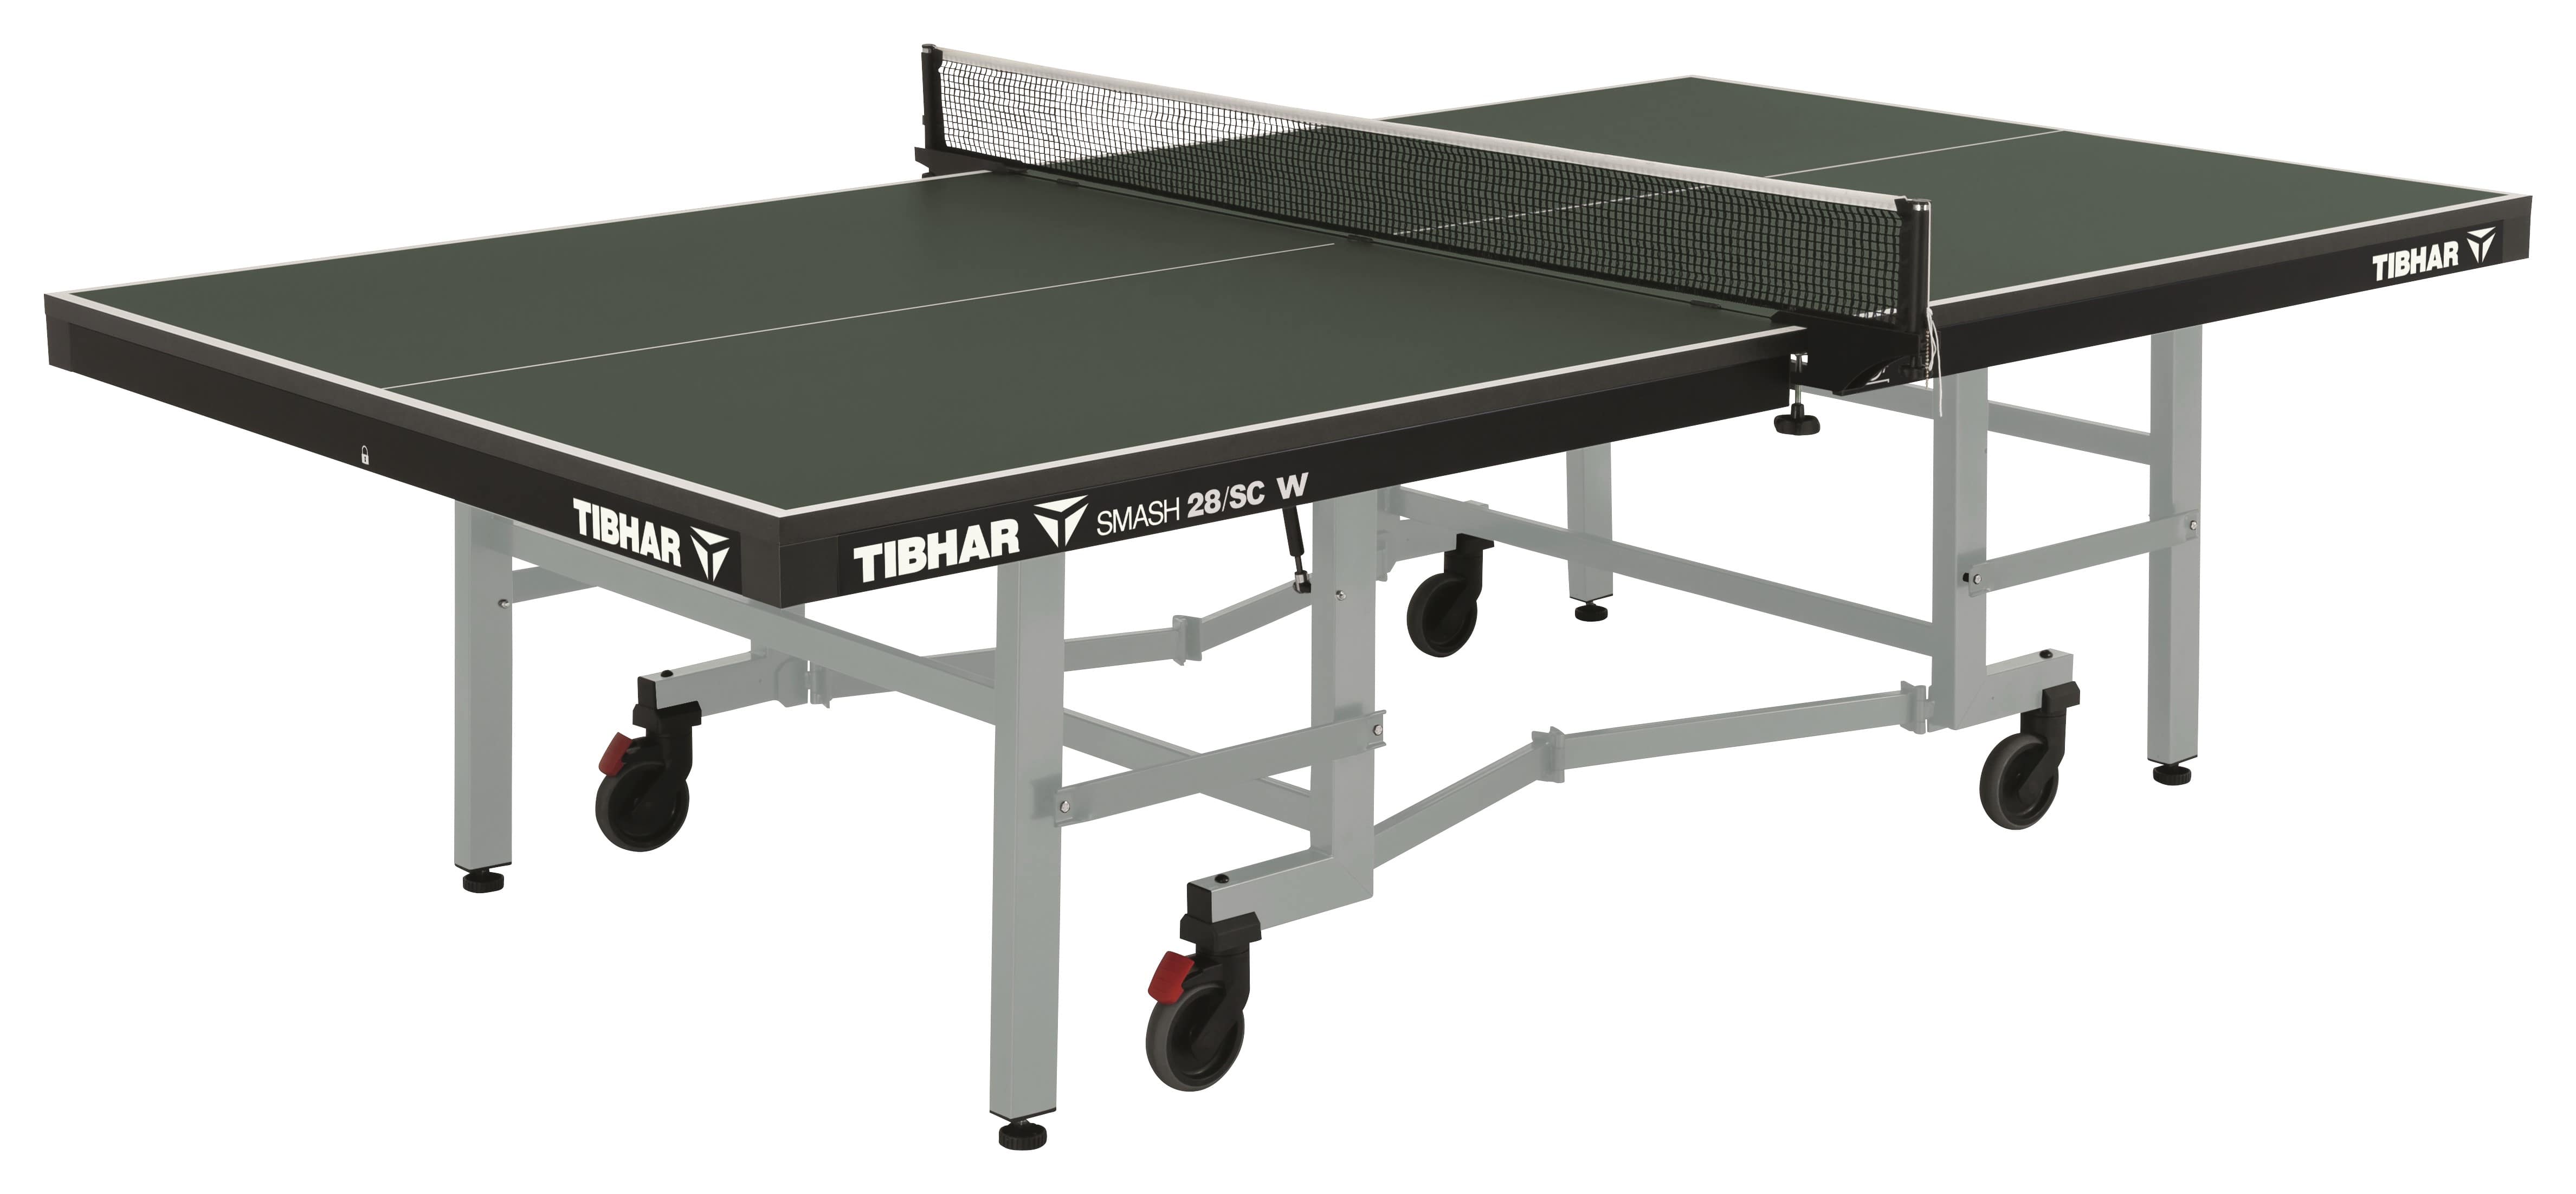 Tibhar Tisch Smash 28/SC W grün | TopSpeed Tischtennis Vertriebs GmbH